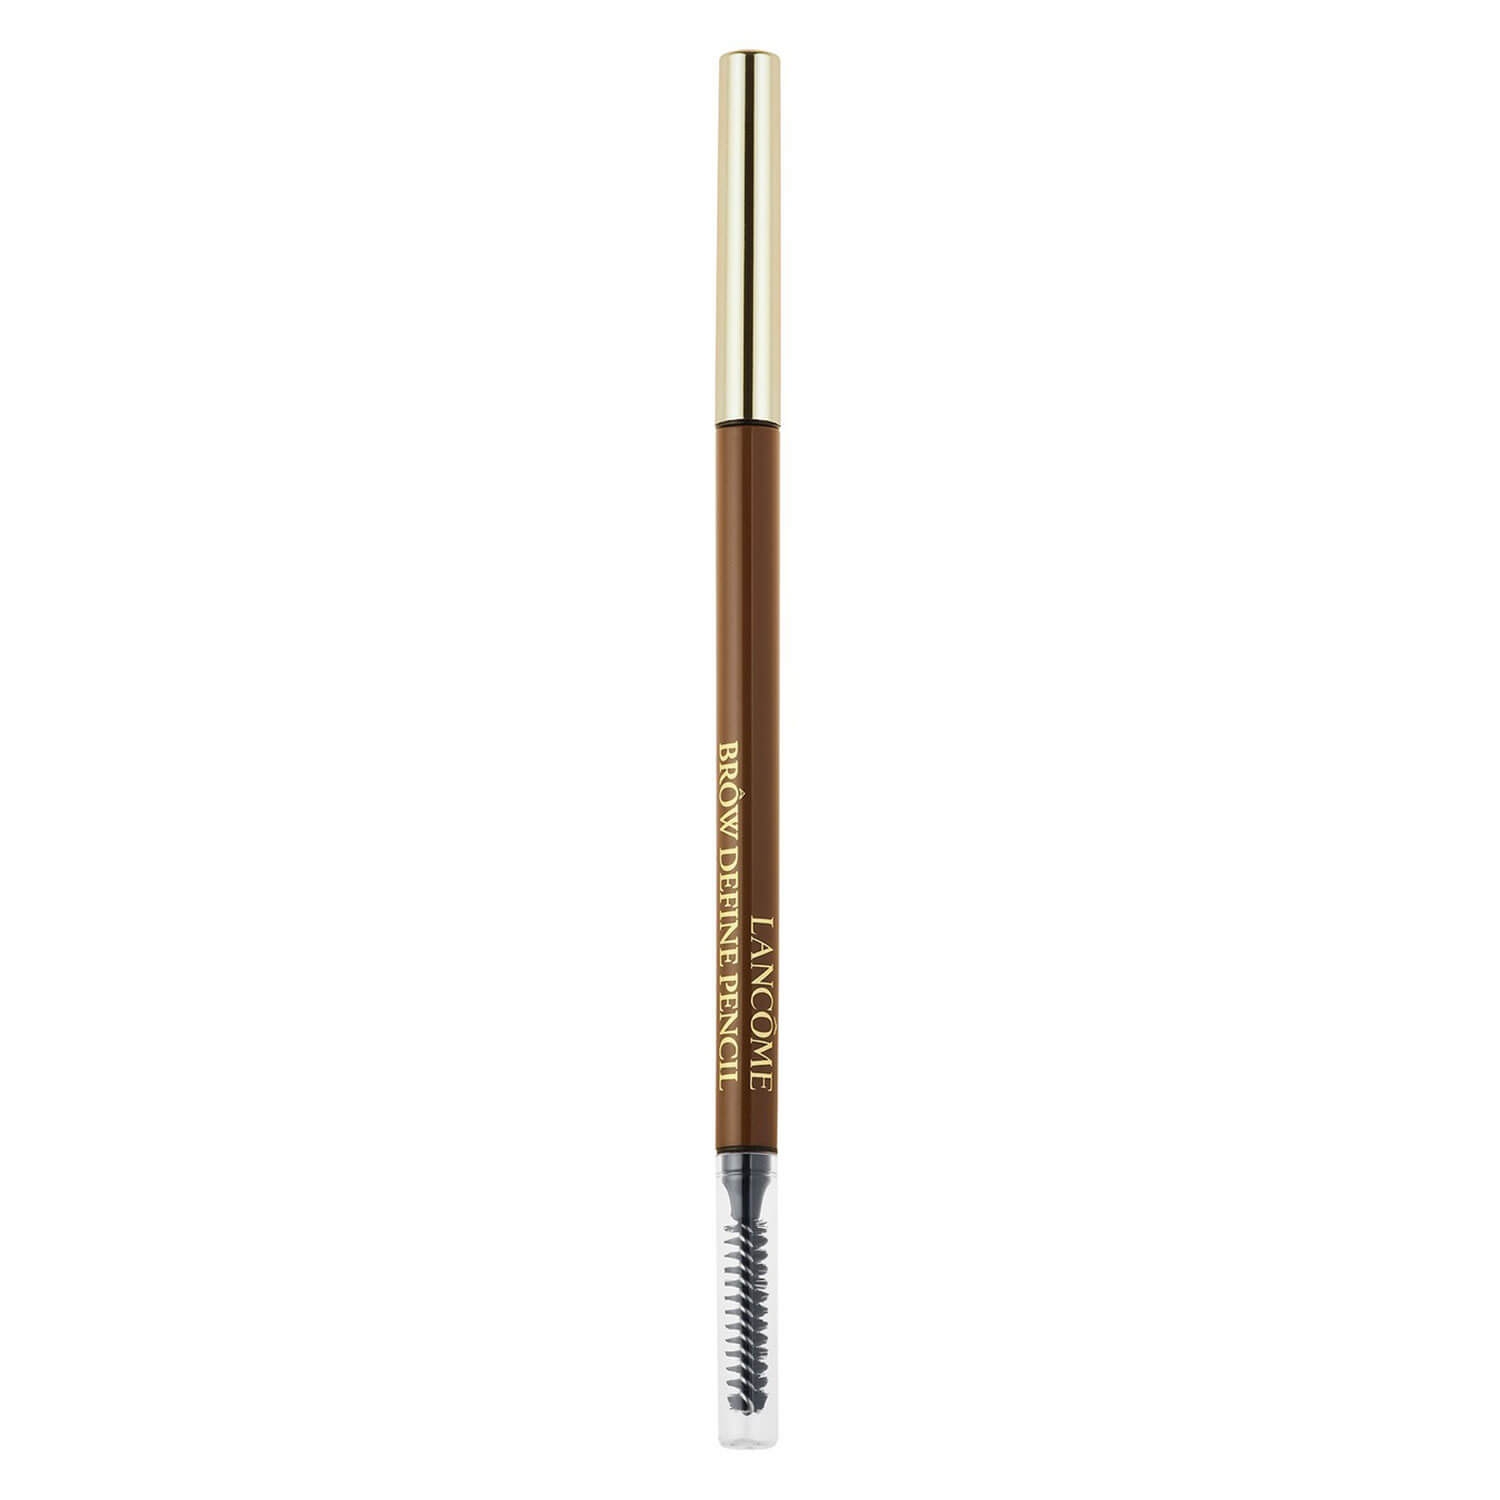 Produktbild von Lancôme Brows - Brow Define Pencil Brown 06